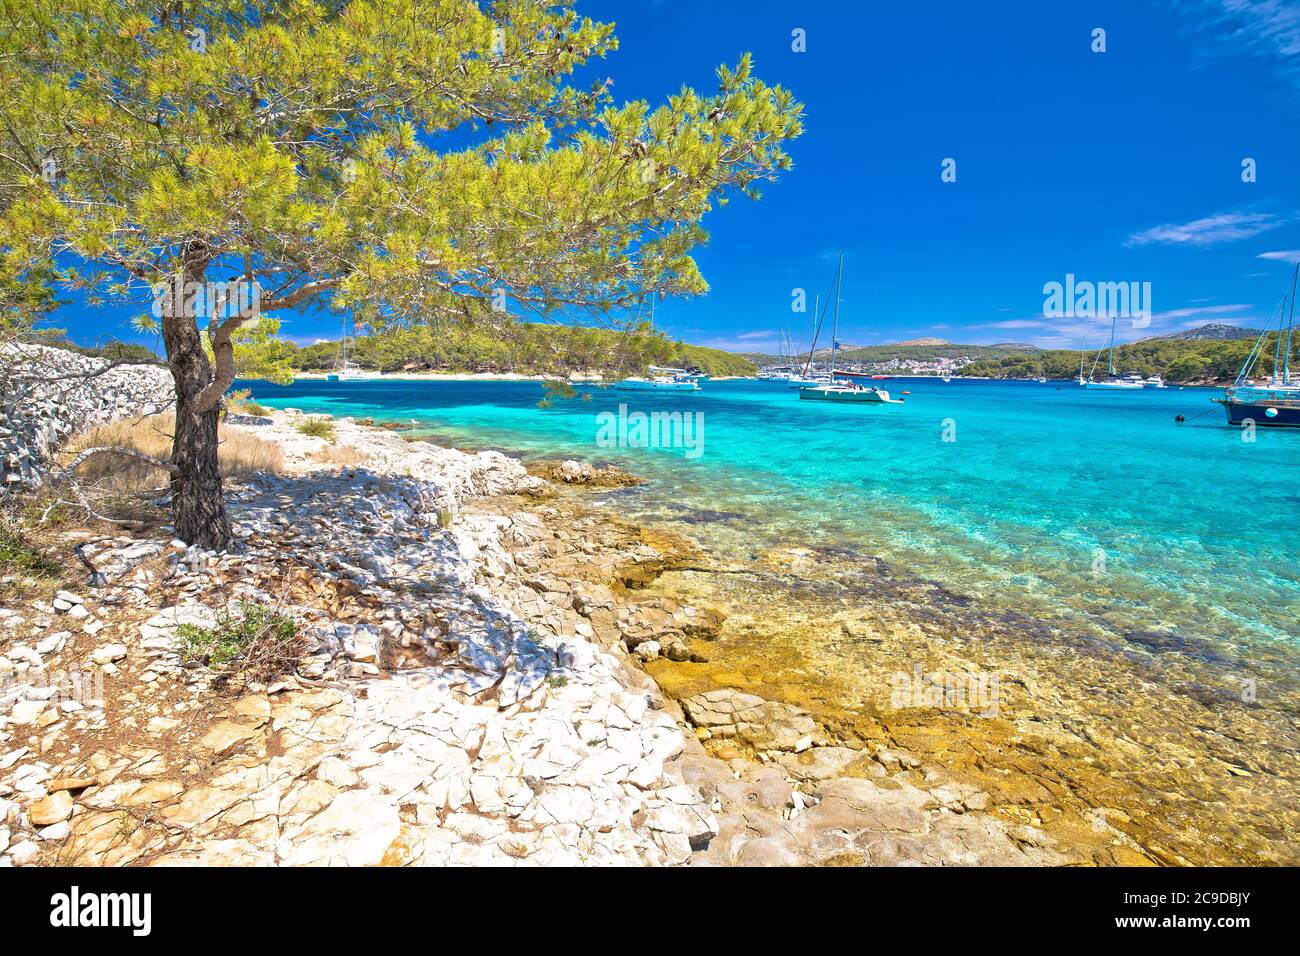 Spiaggia turchese sulle isole Pakleni otoci destinazione turistica, arcipelago di Hvar, Croazia Foto Stock